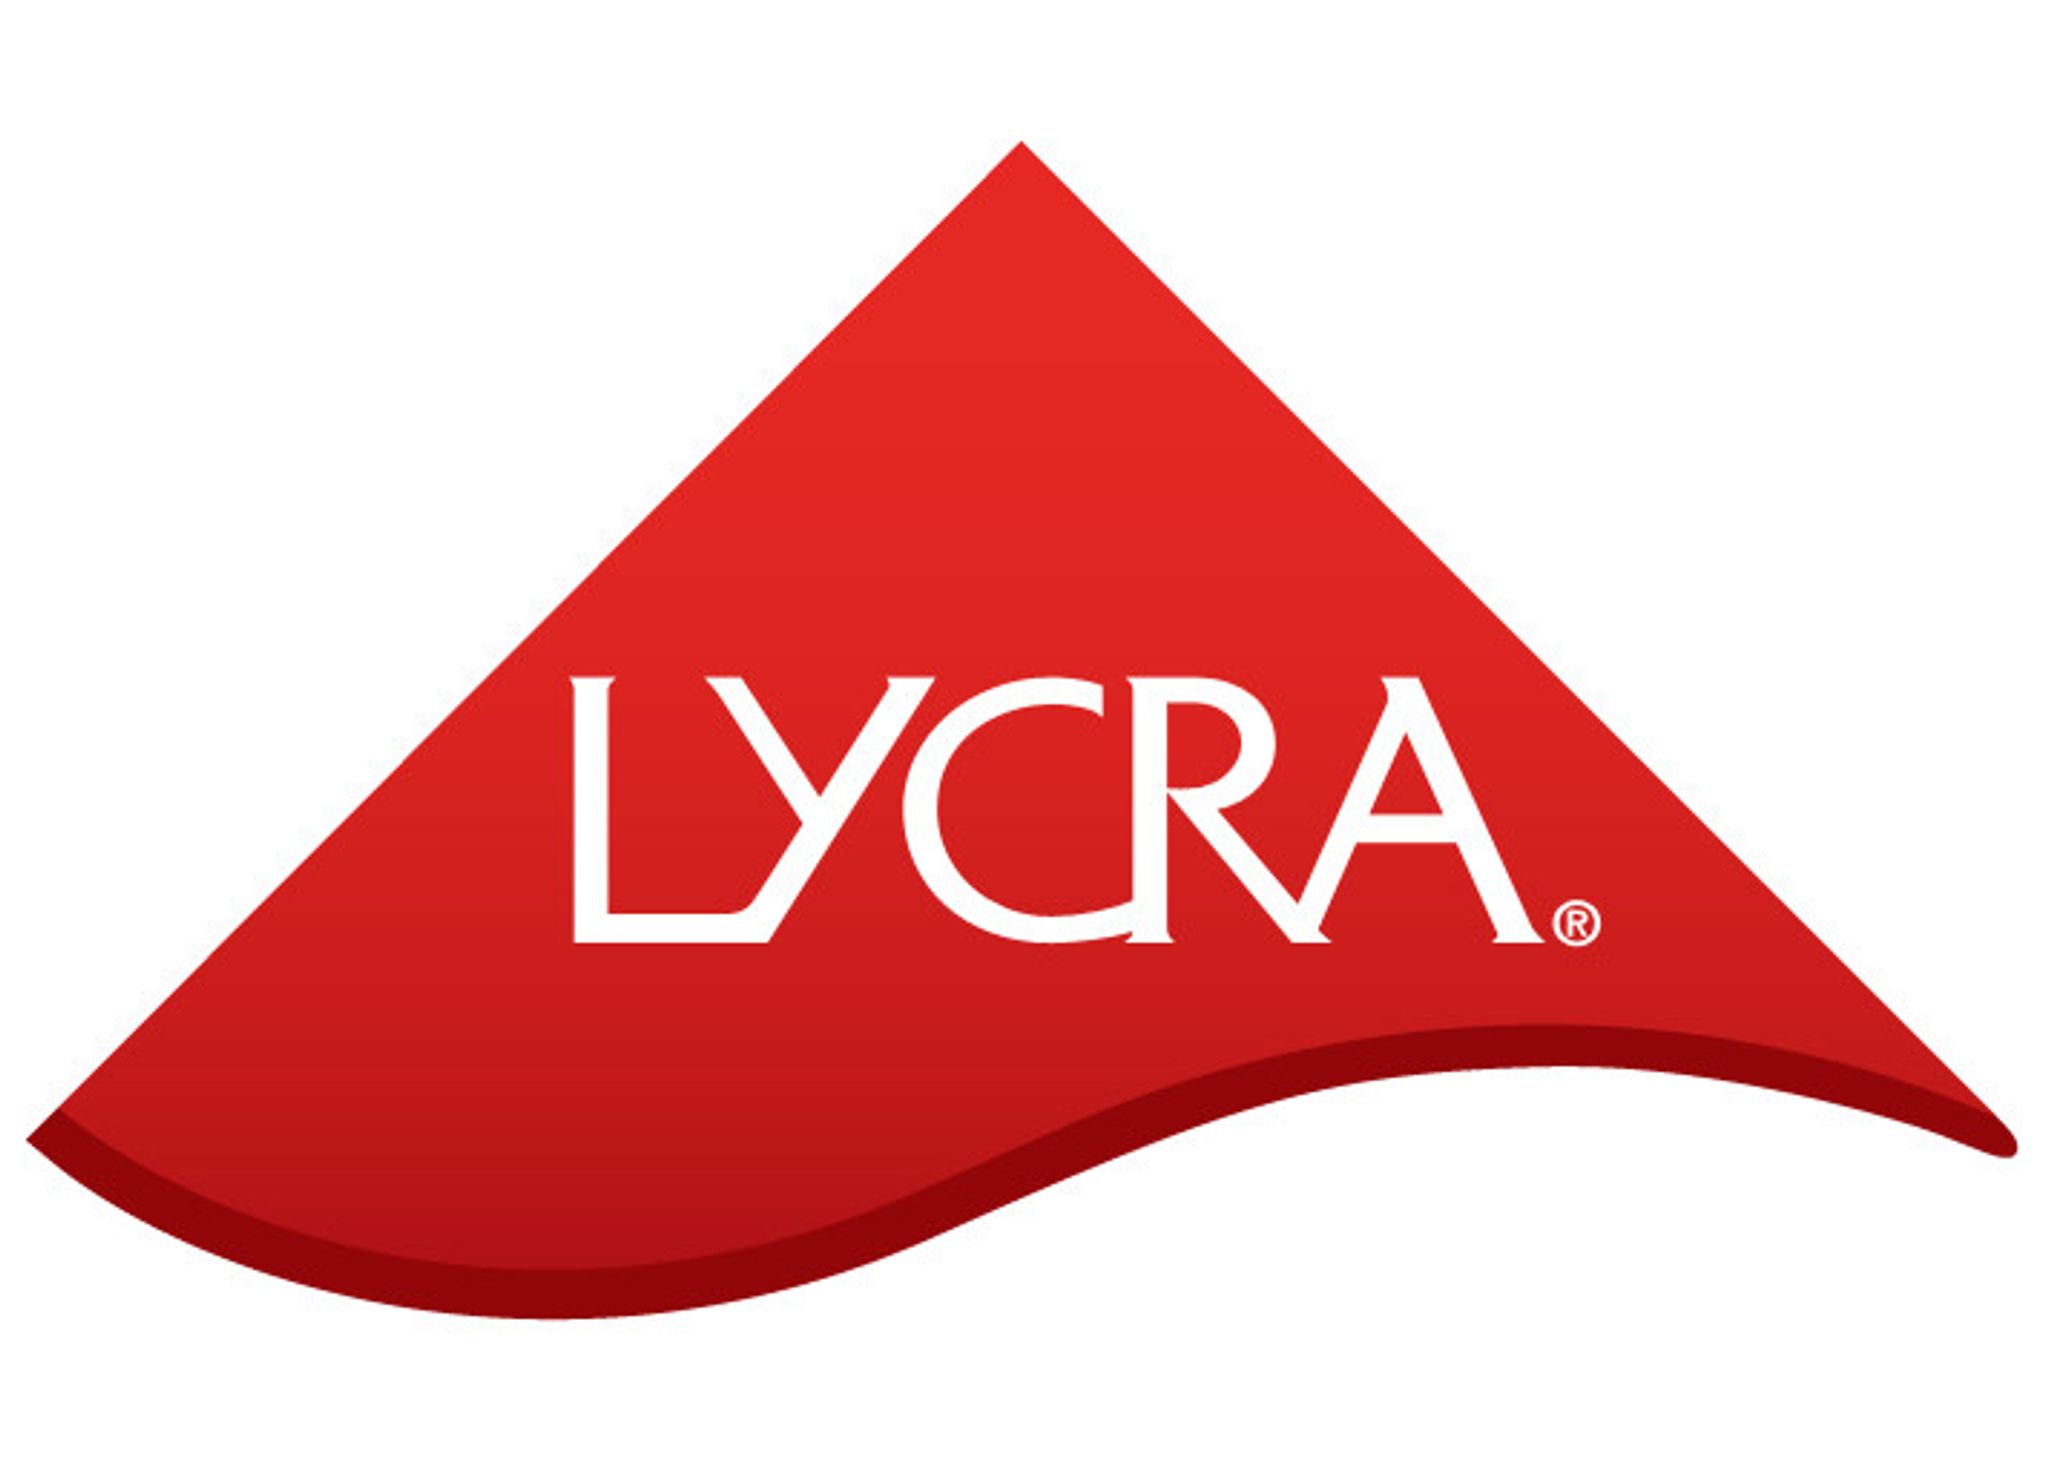 Lycra color red logo